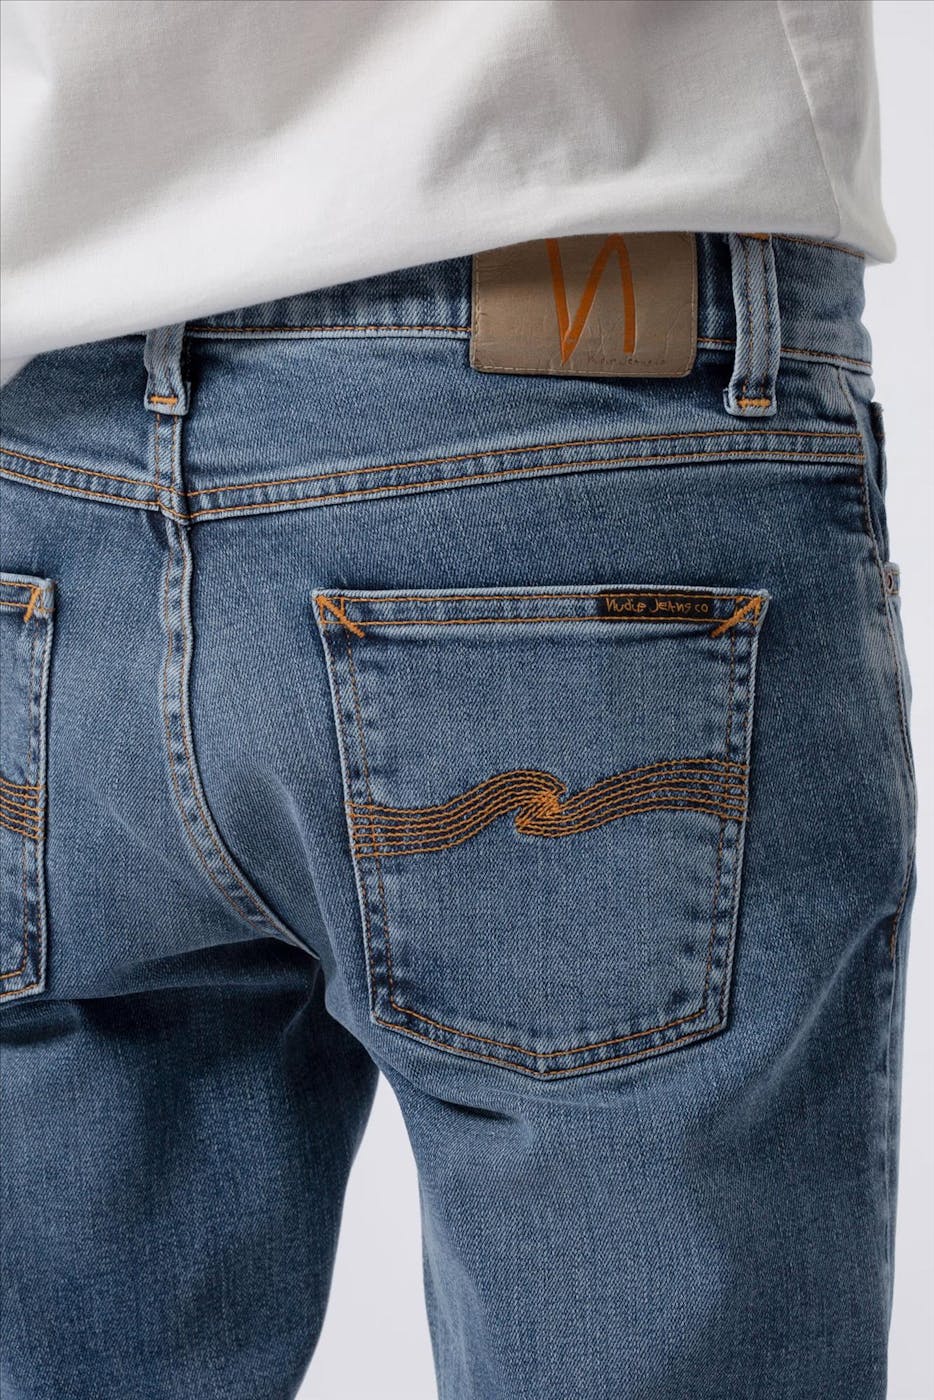 Nudie Jeans Co. - Indigoblauwe Lean Dean slim tapered jeans